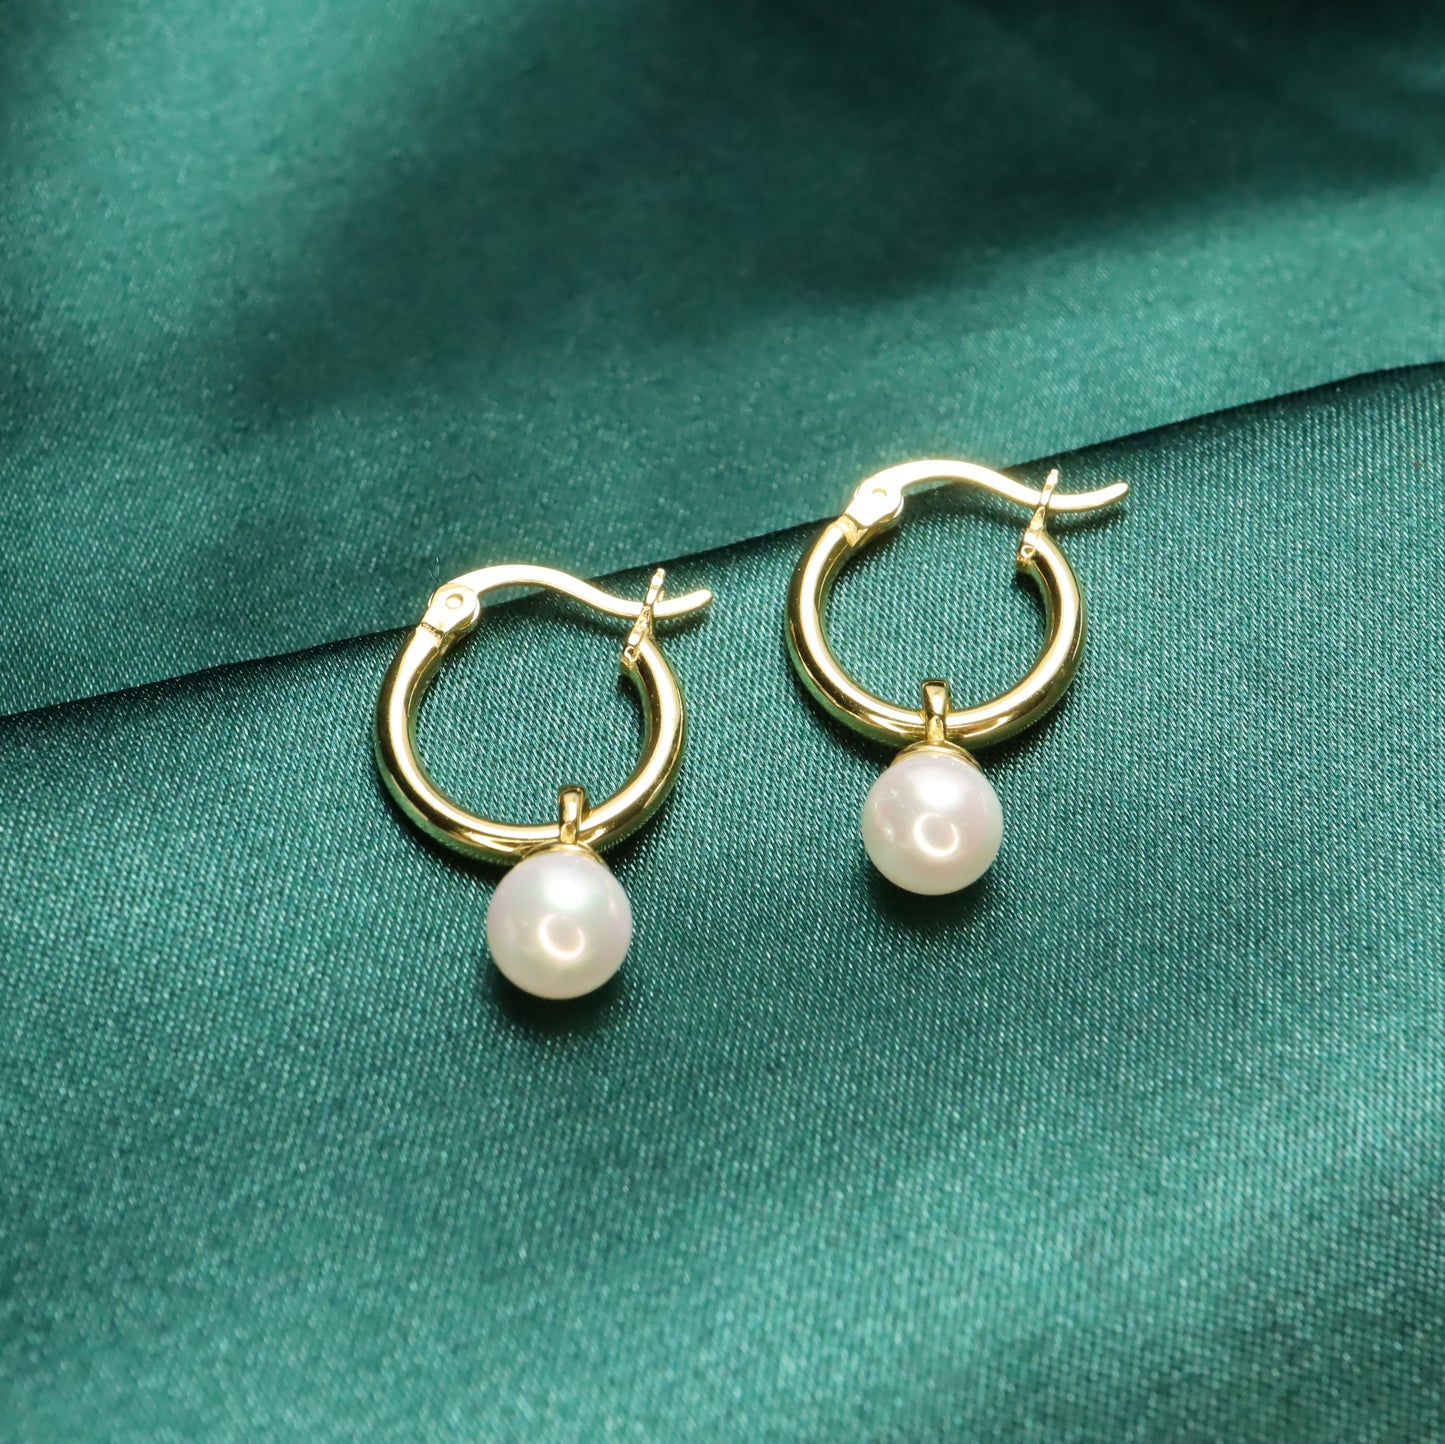 Pearl Lady - Vintage S925 Sterling Silver & Pearl Hoop Earrings (Color: Gold)